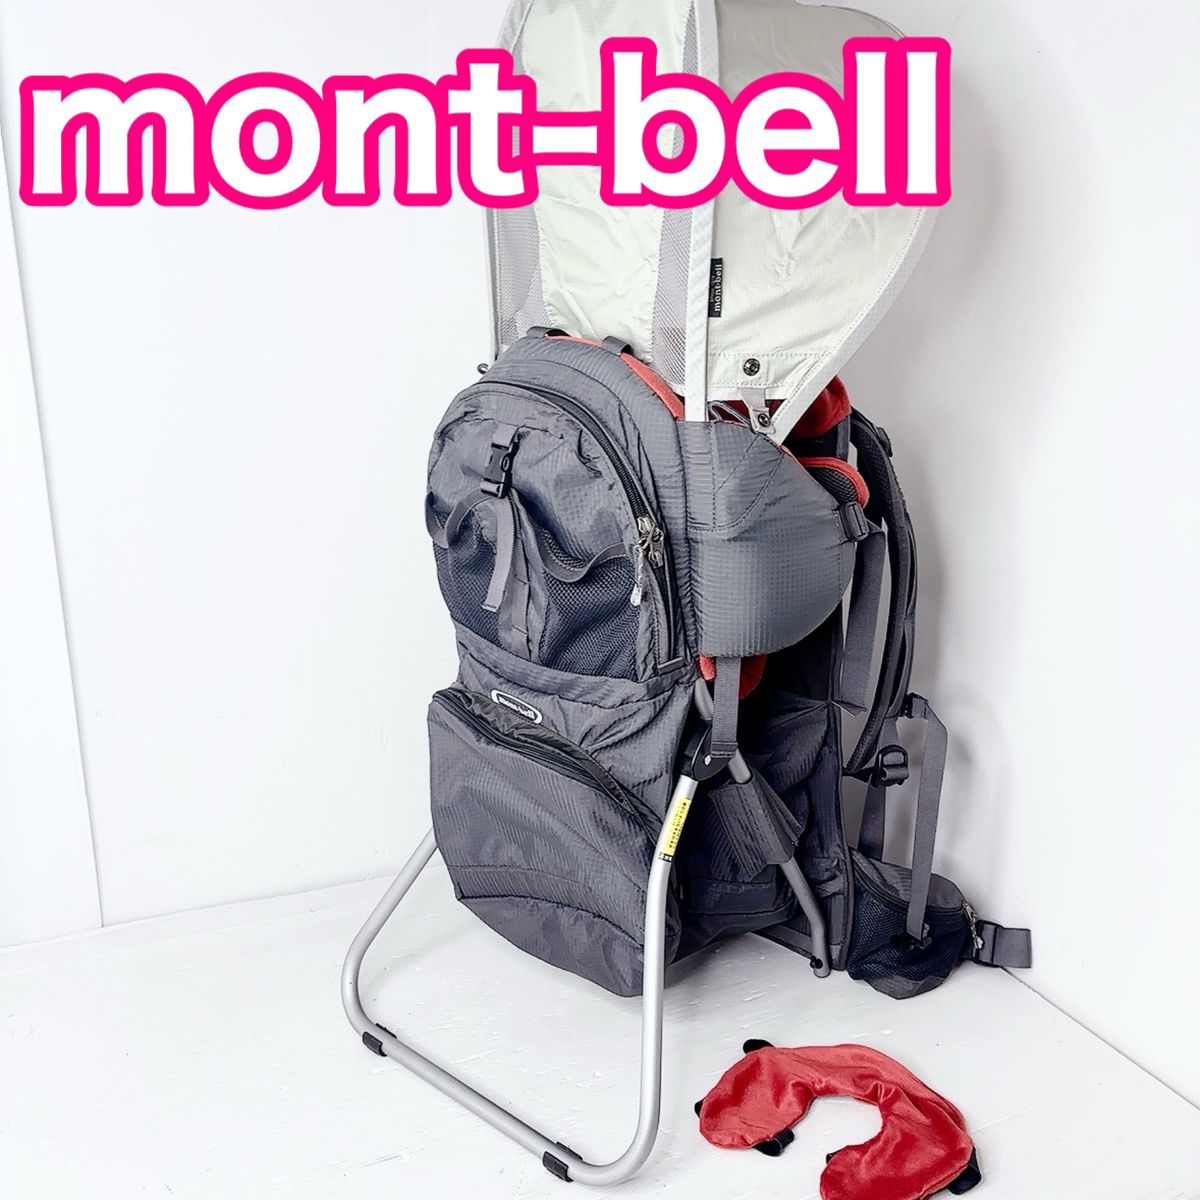 mont-bell モンベル ベビーキャリア グレー オレンジ 背負子